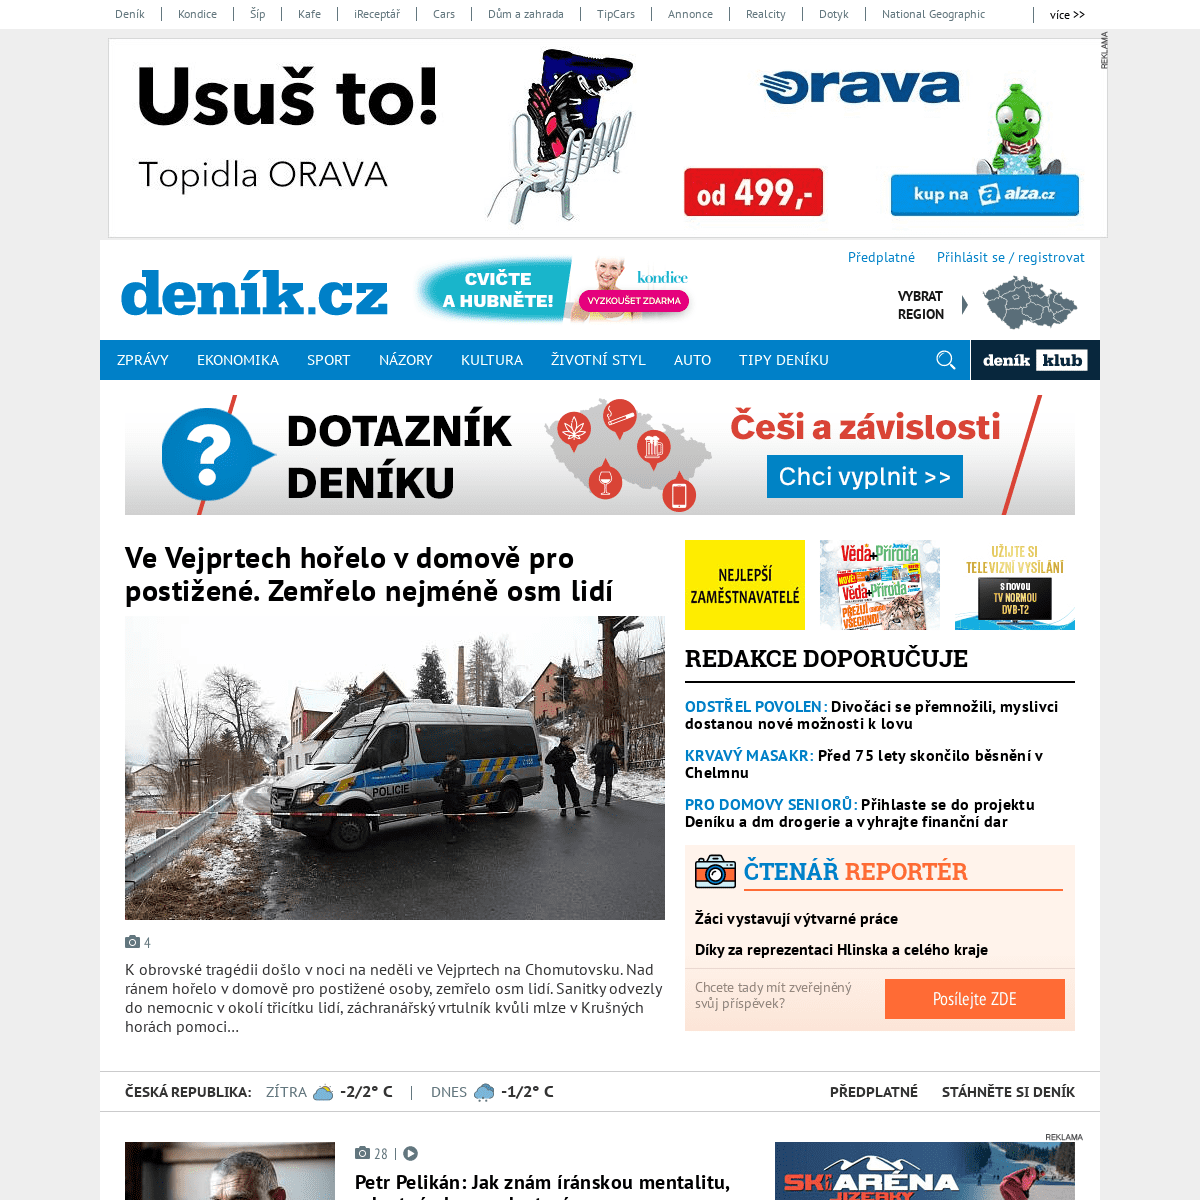 A complete backup of denik.cz